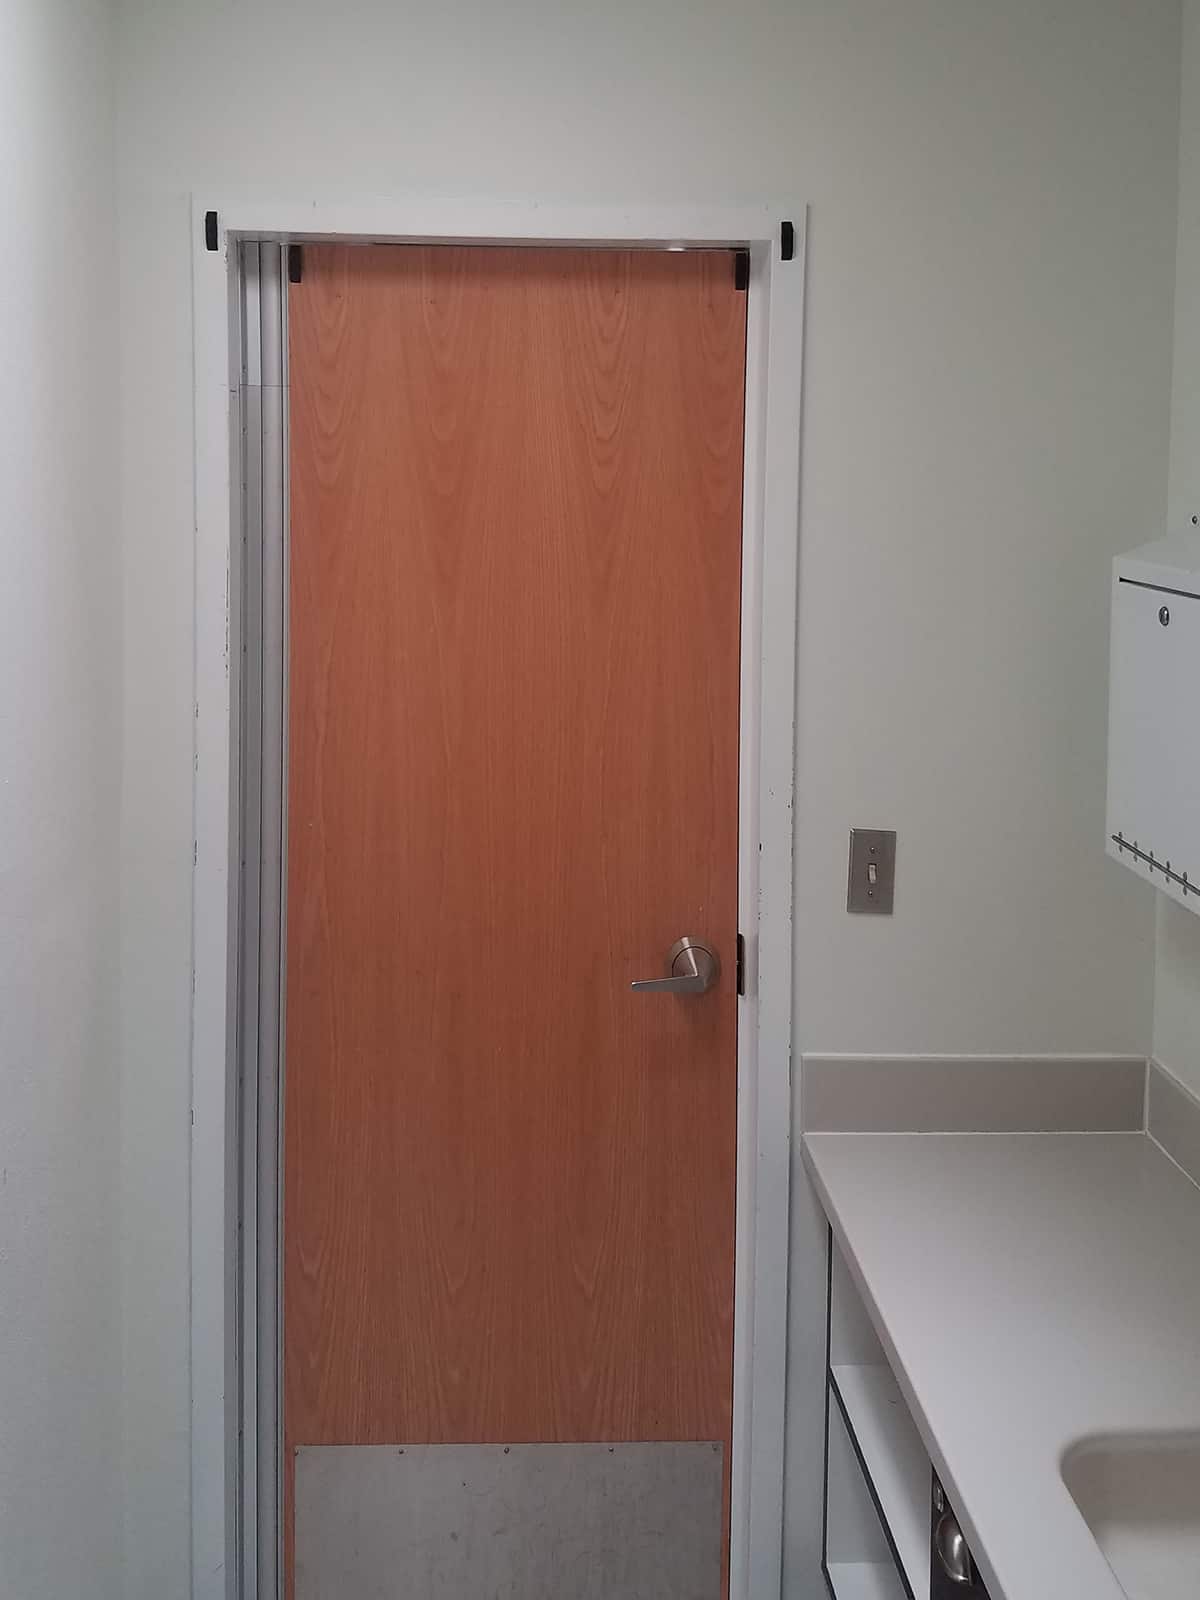 Hospital door with Top Door Alarm sensors